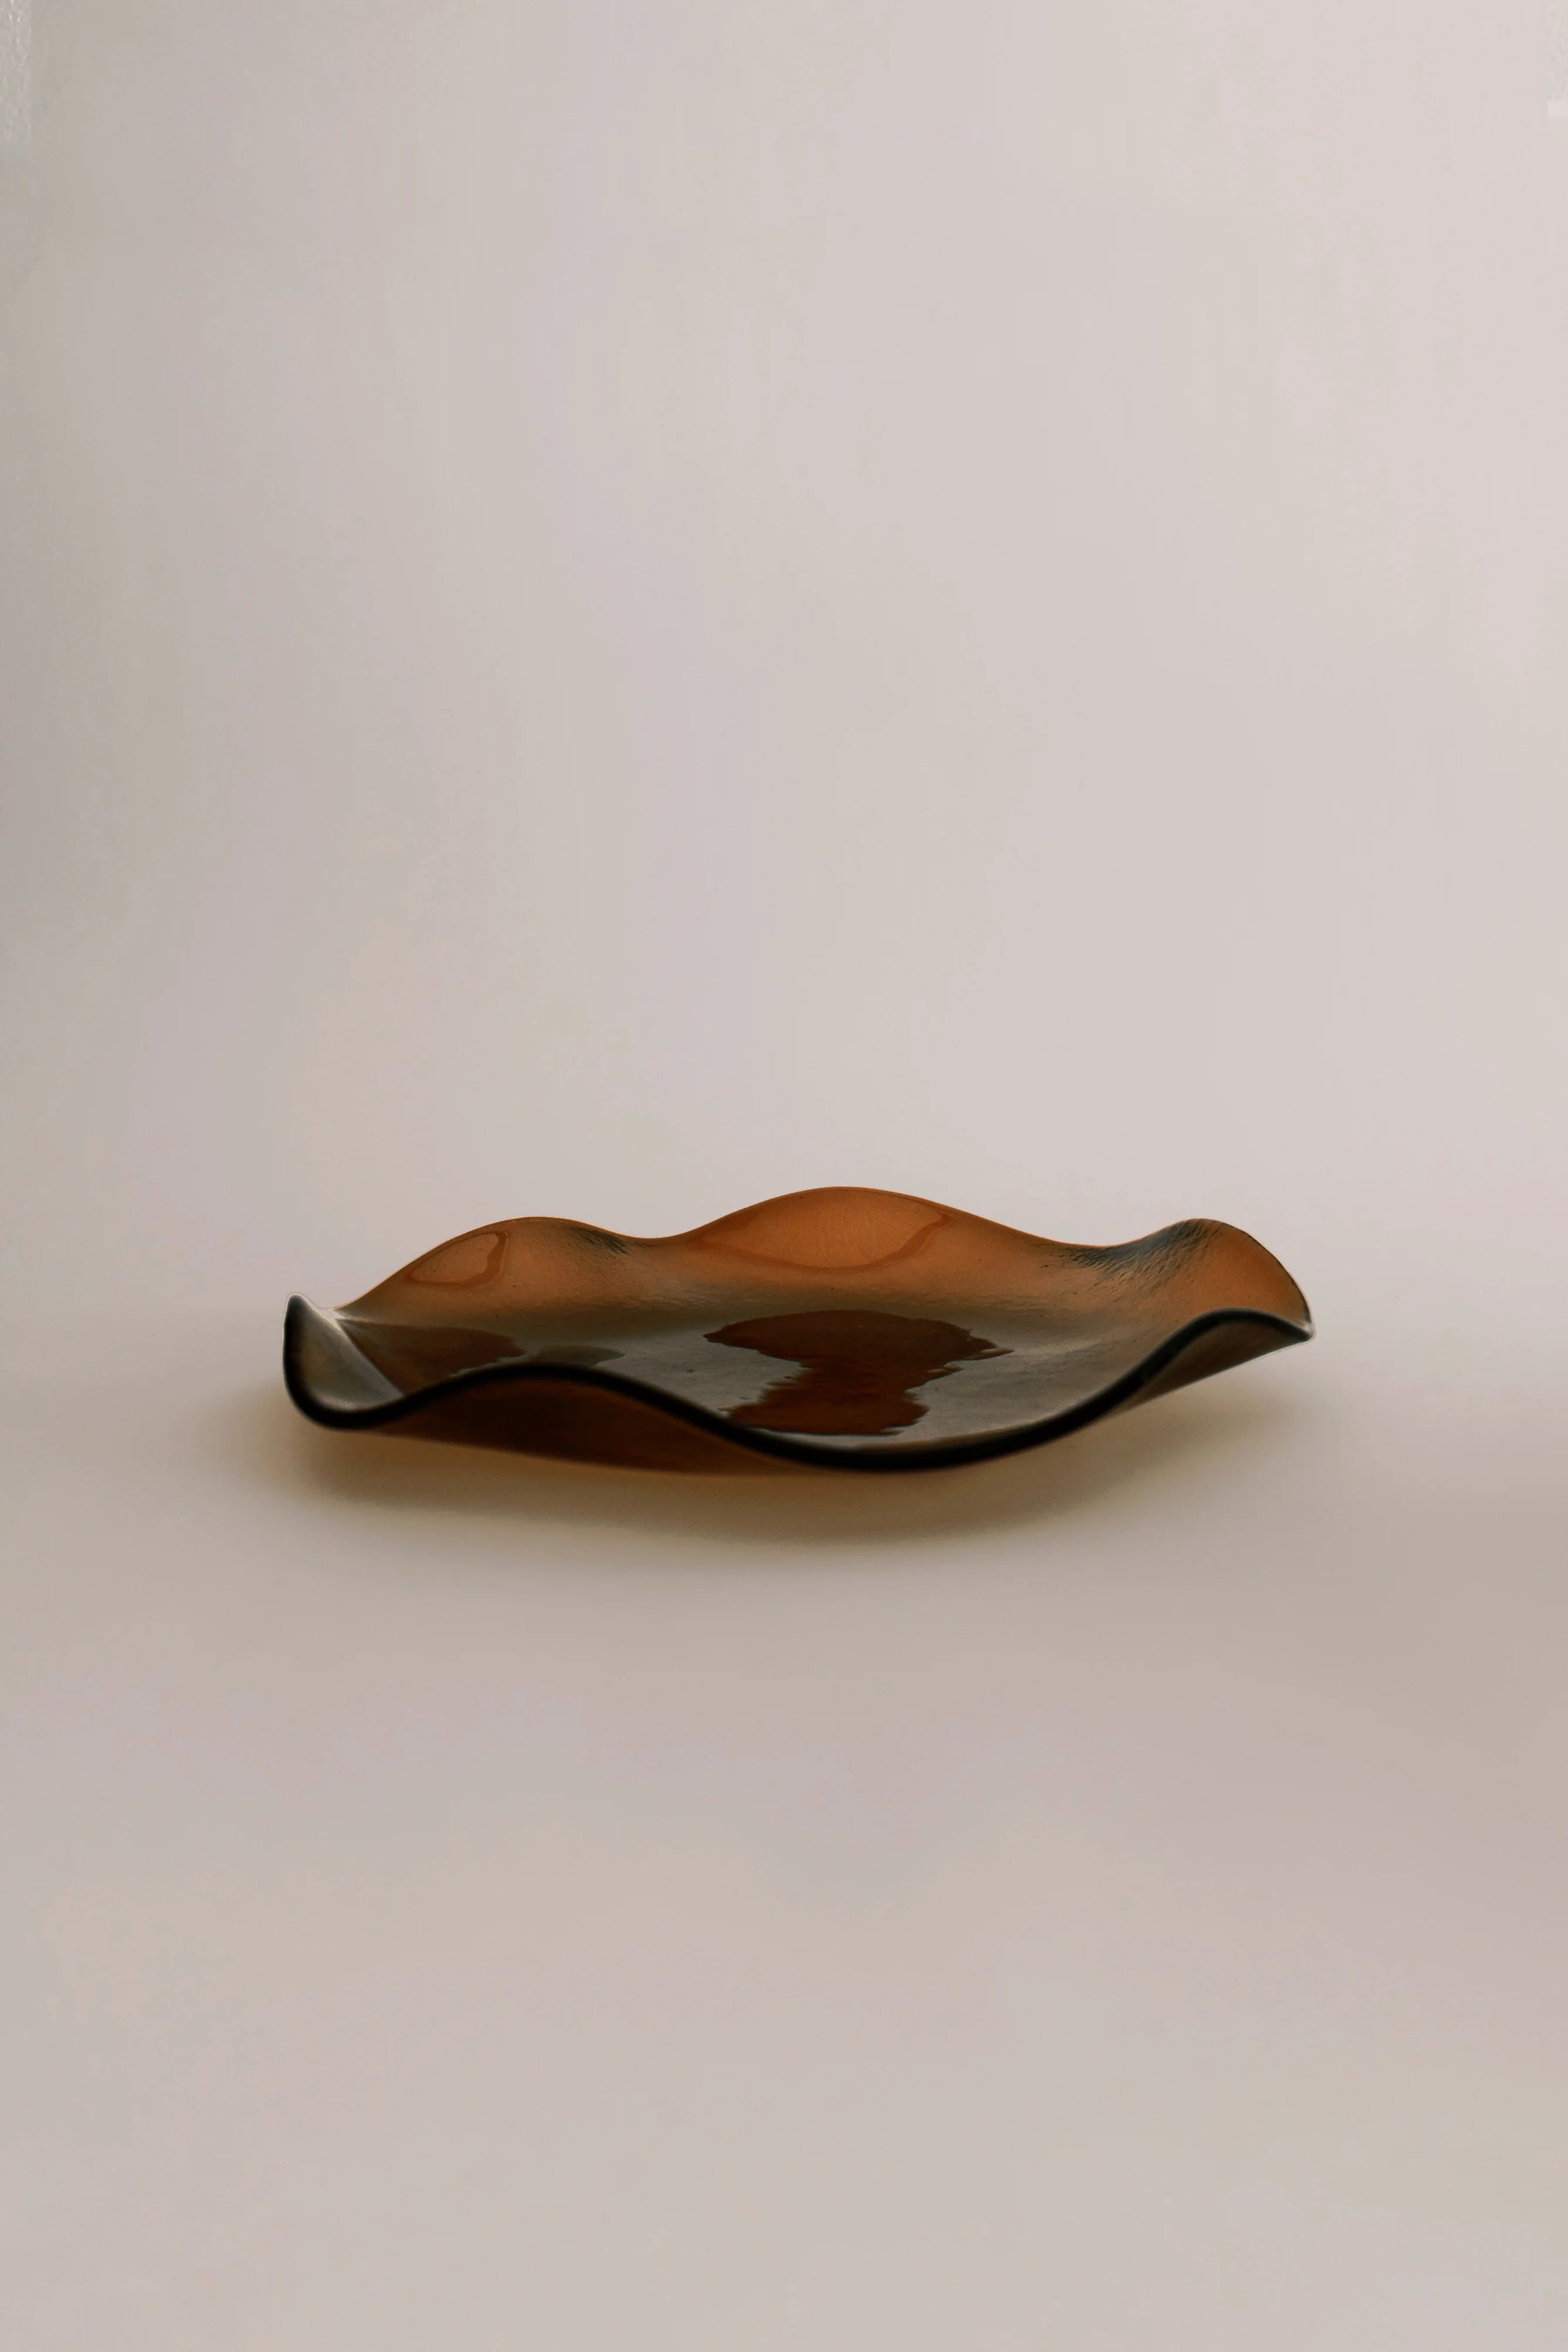 Charger Plates Petal Plate - Large Pecan (Transparent) Sophie Lou Jacobsen